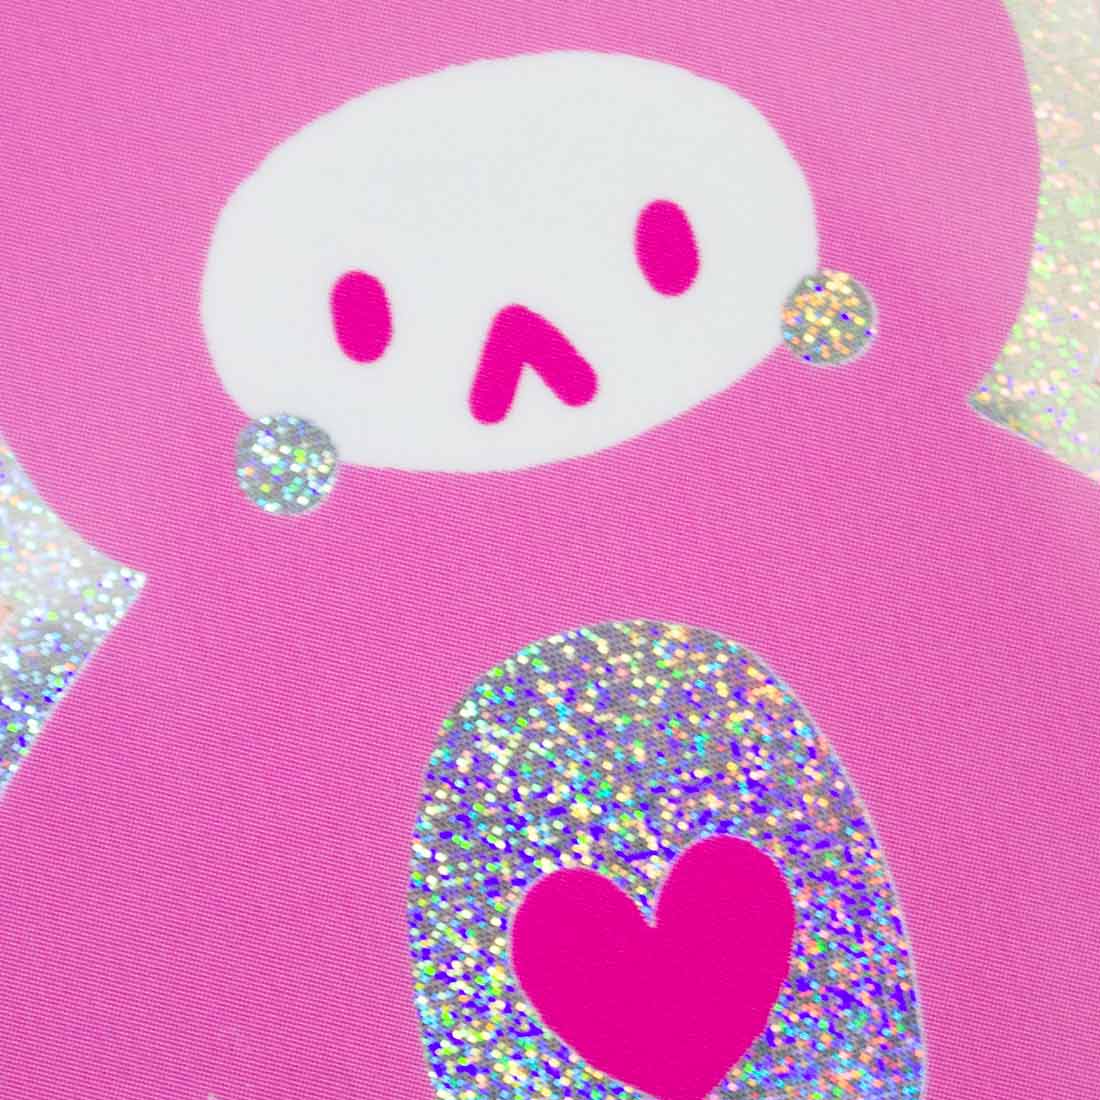 Shiny Teddy "Pixie Dust" Sticker 3"